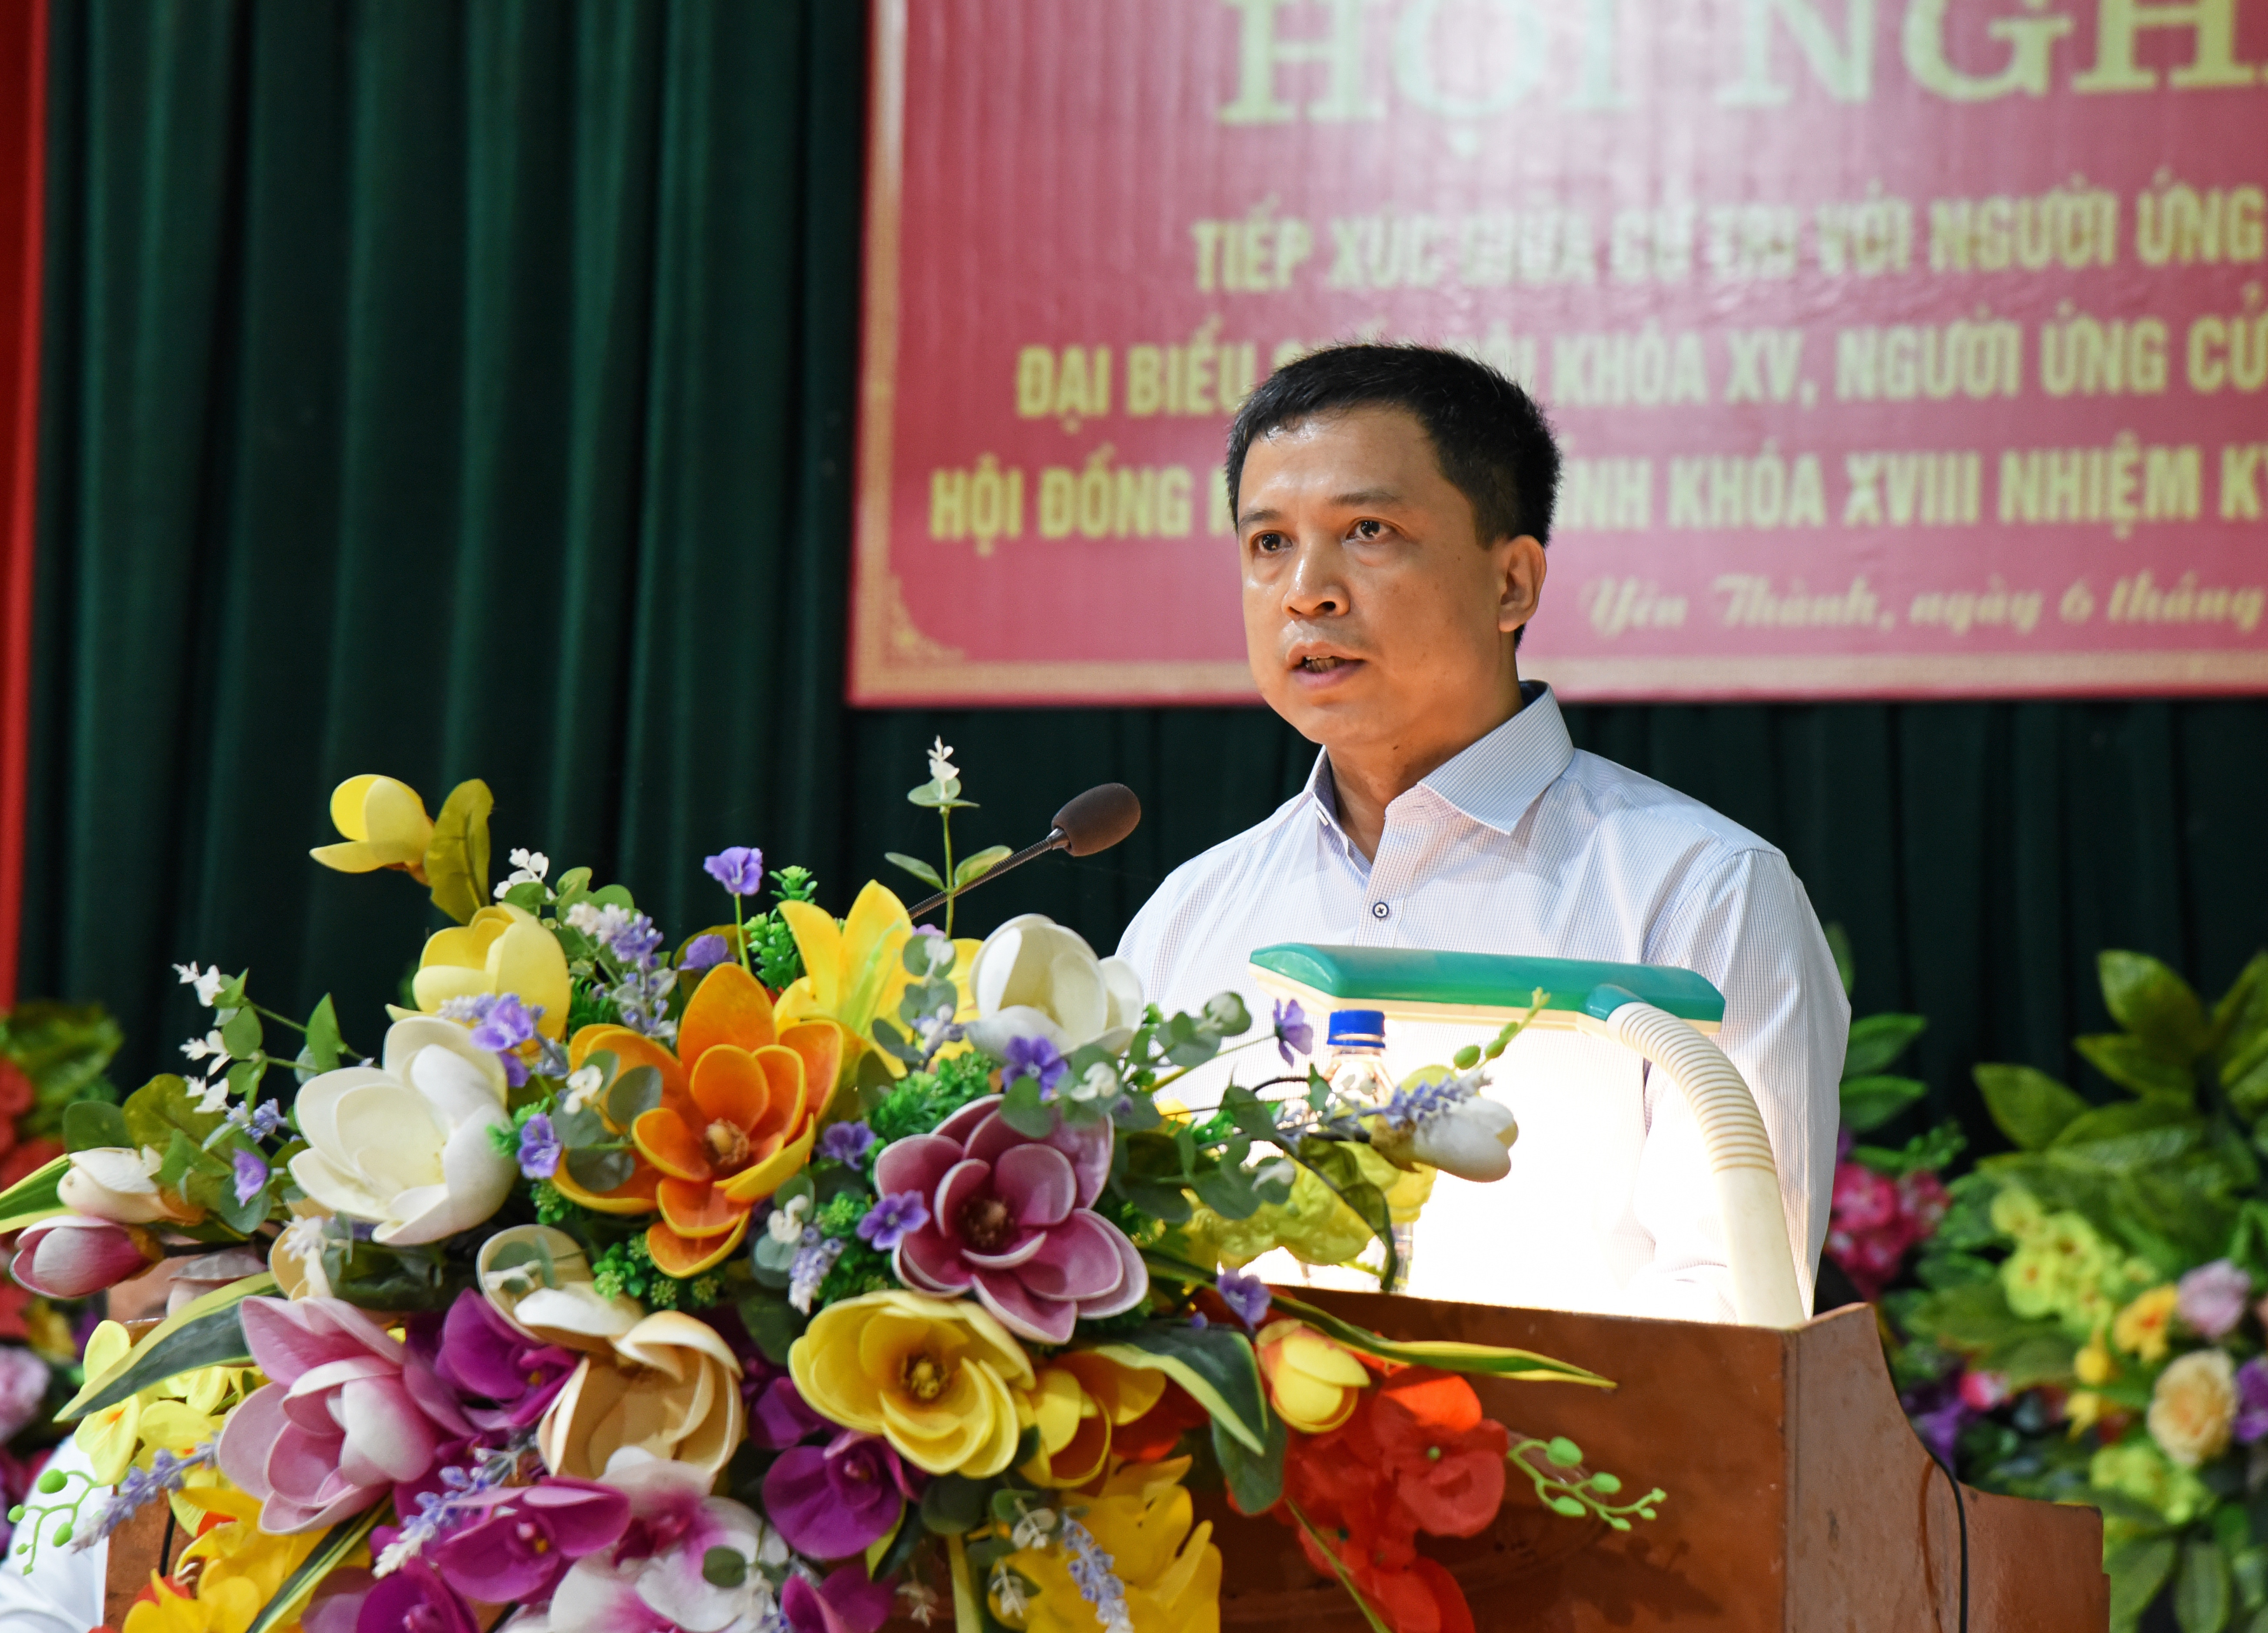 Ông Phạm Phú Bình - Vụ trưởng Vụ Hợp tác Quốc tế, Bộ Tài nguyên và Môi trường trình bày dự kiến chương trình hành động nếu được bầu làm đại biểu Quốc hội. Ảnh: TG